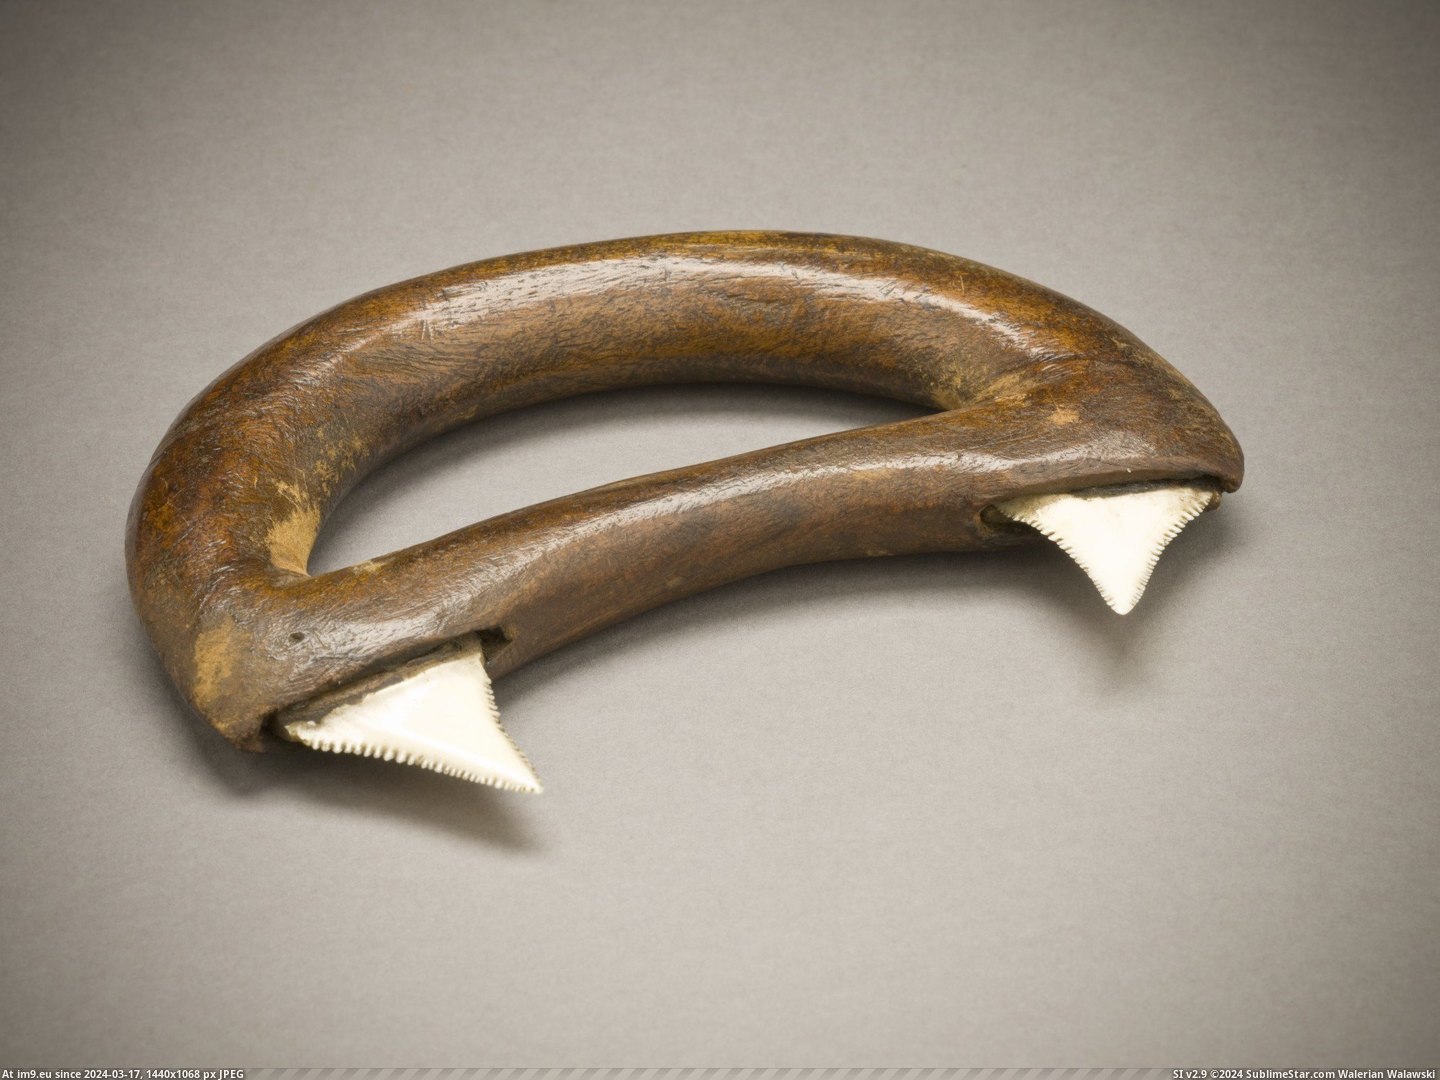 #Hand #Wood #Circa #Teeth #Hawaiian #Shark #Weapon [Pics] Hawaiian hand weapon made out of wood and shark teeth circa 1778 Pic. (Изображение из альбом My r/PICS favs))